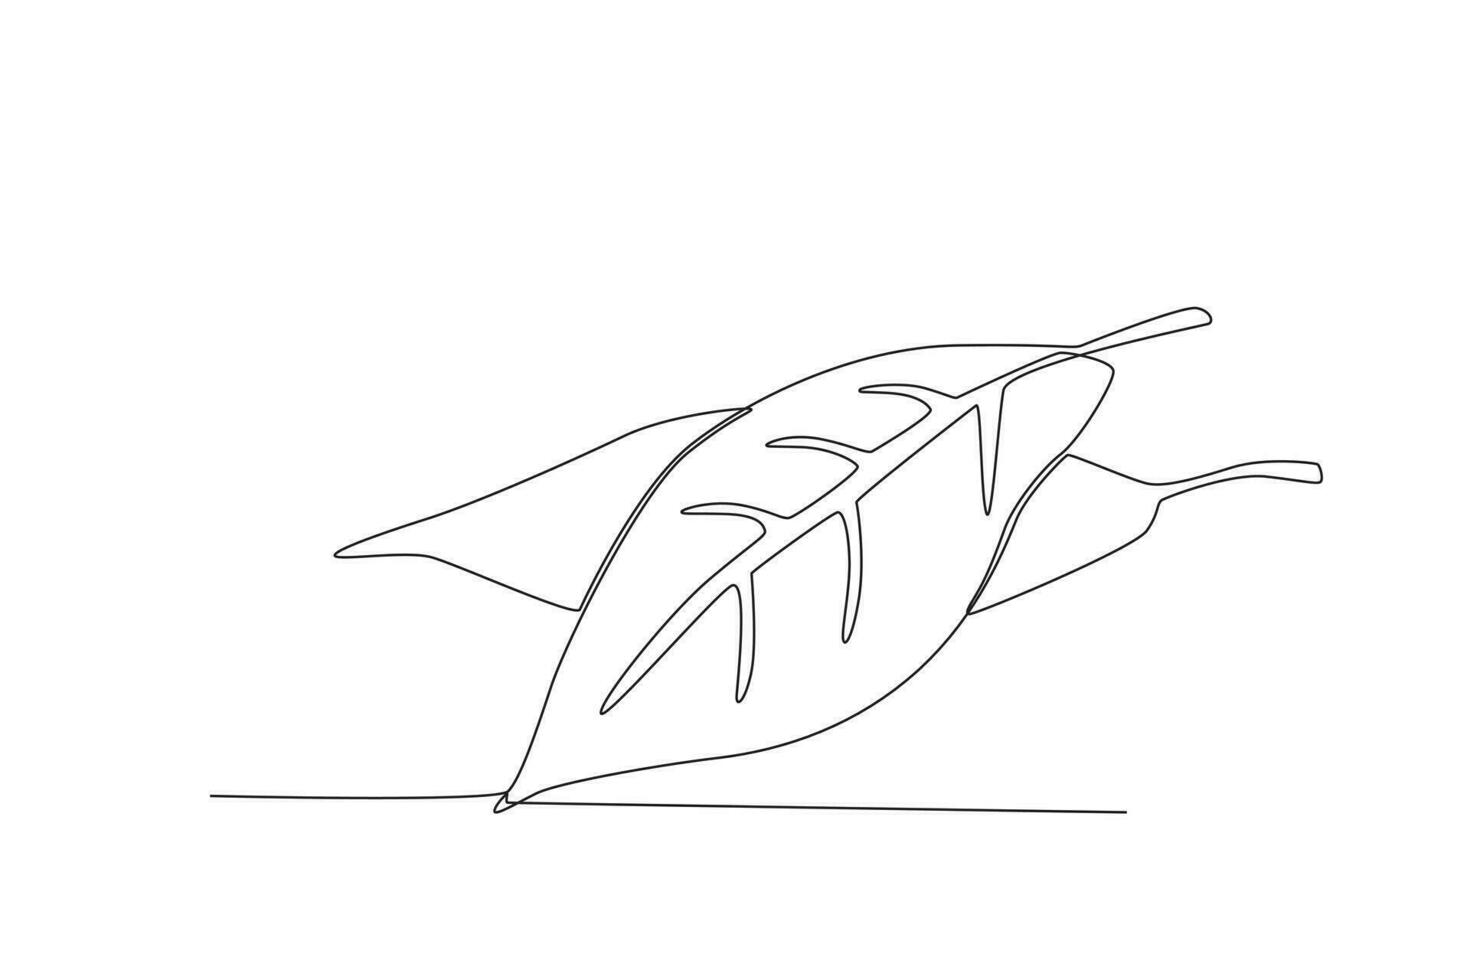 solteiro 1 linha desenhando baía folha vegetal conceito contínuo linha desenhar Projeto gráfico vetor ilustração